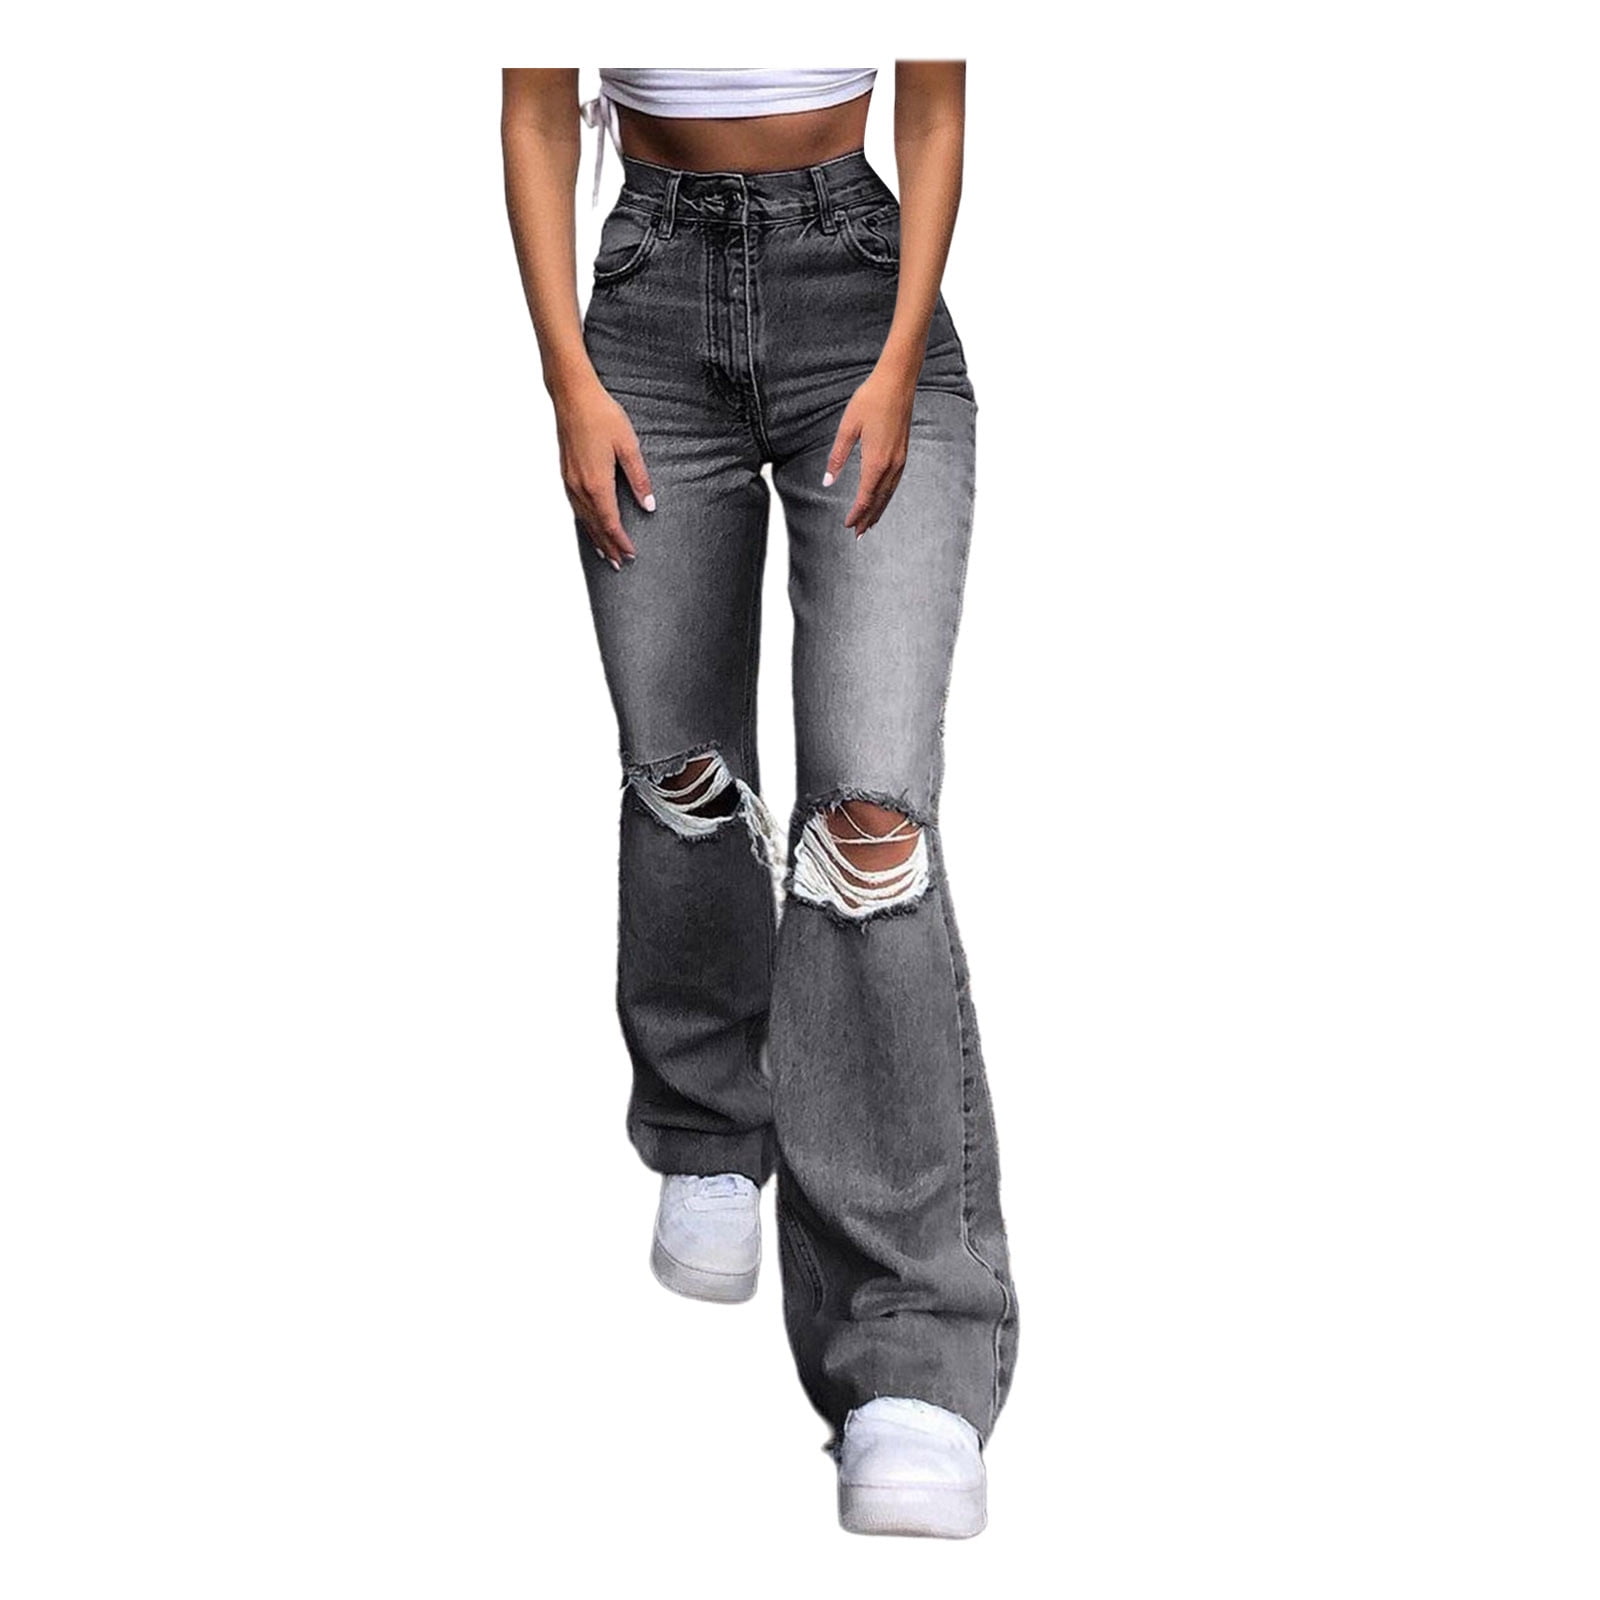 JGTDBPO Wide Leg Ripped Jeans For Women Baggy Distressed Denim